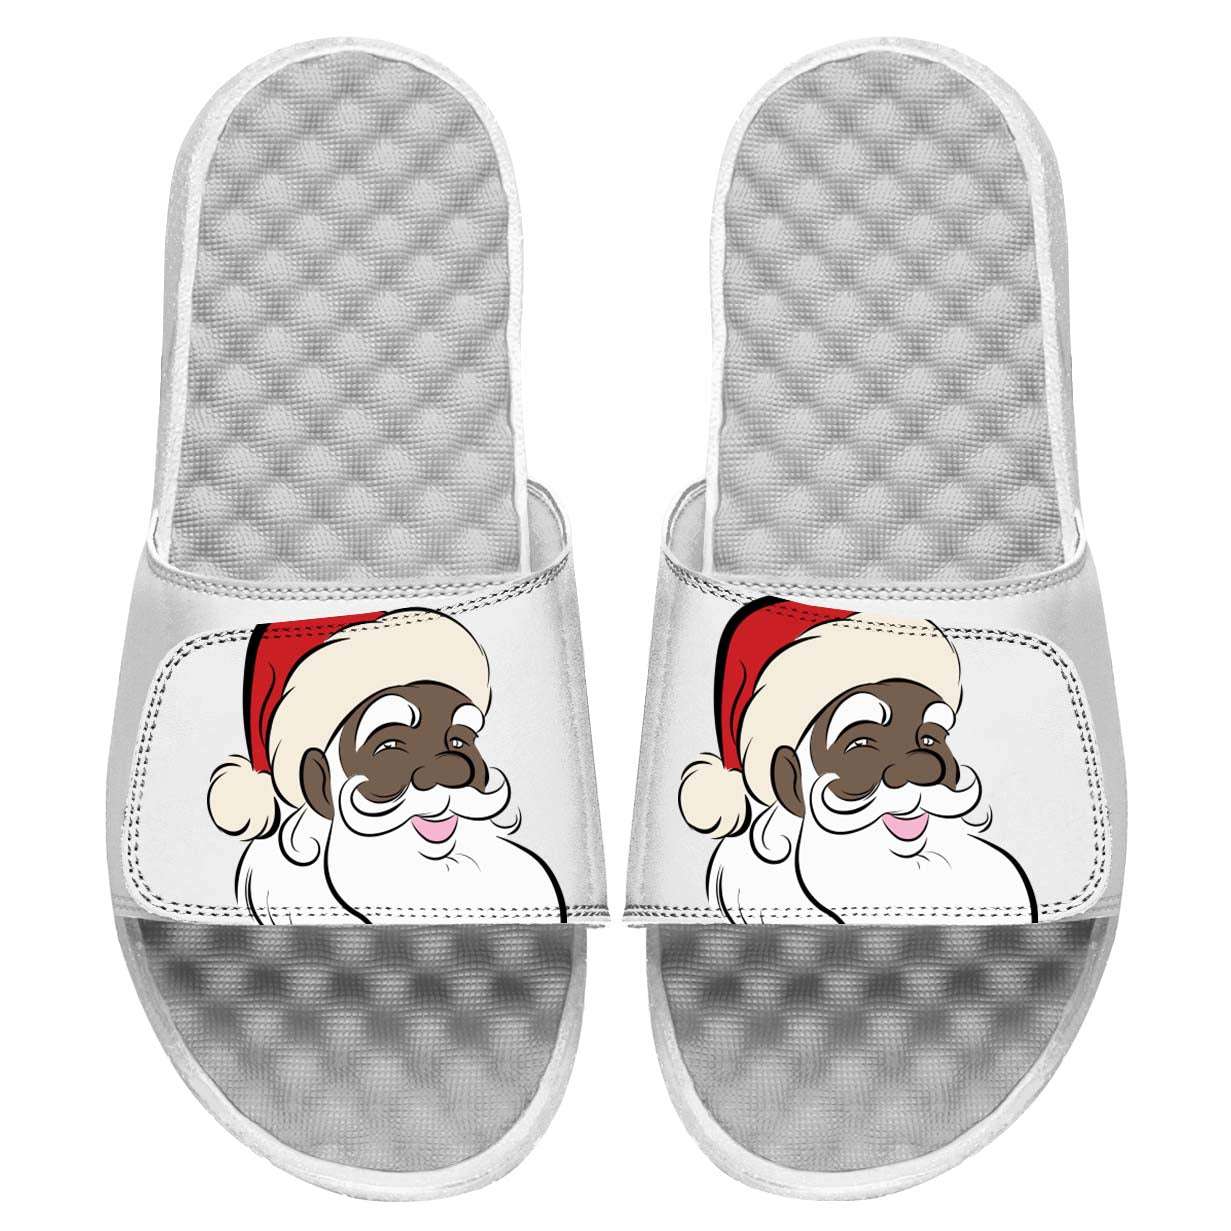 Santa Great White Slides